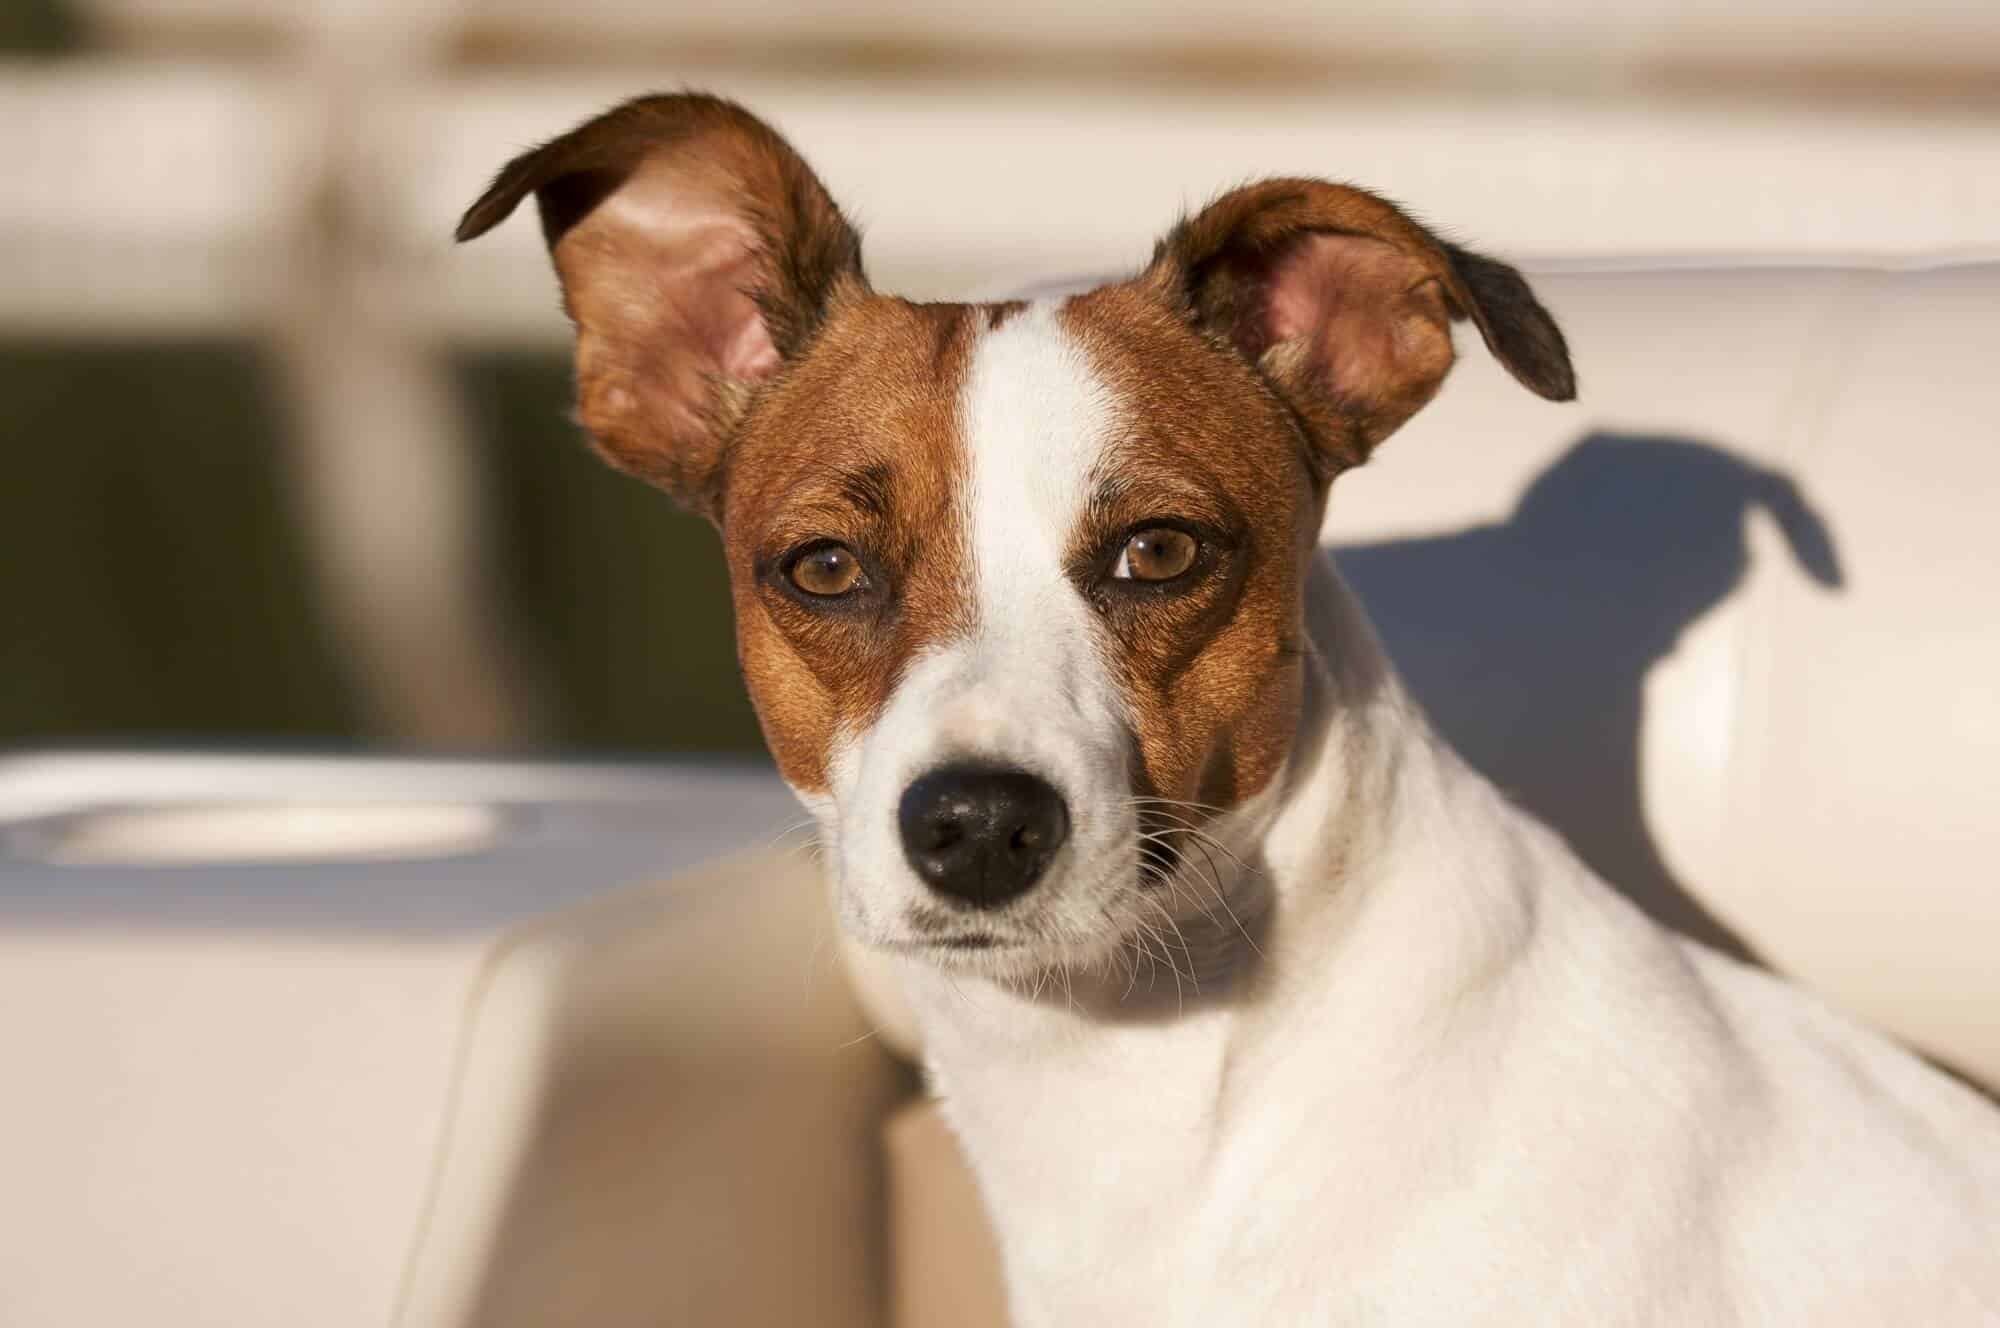 seguros de responsabilidad civil para perros. Imagen de un perro blanco y marrón